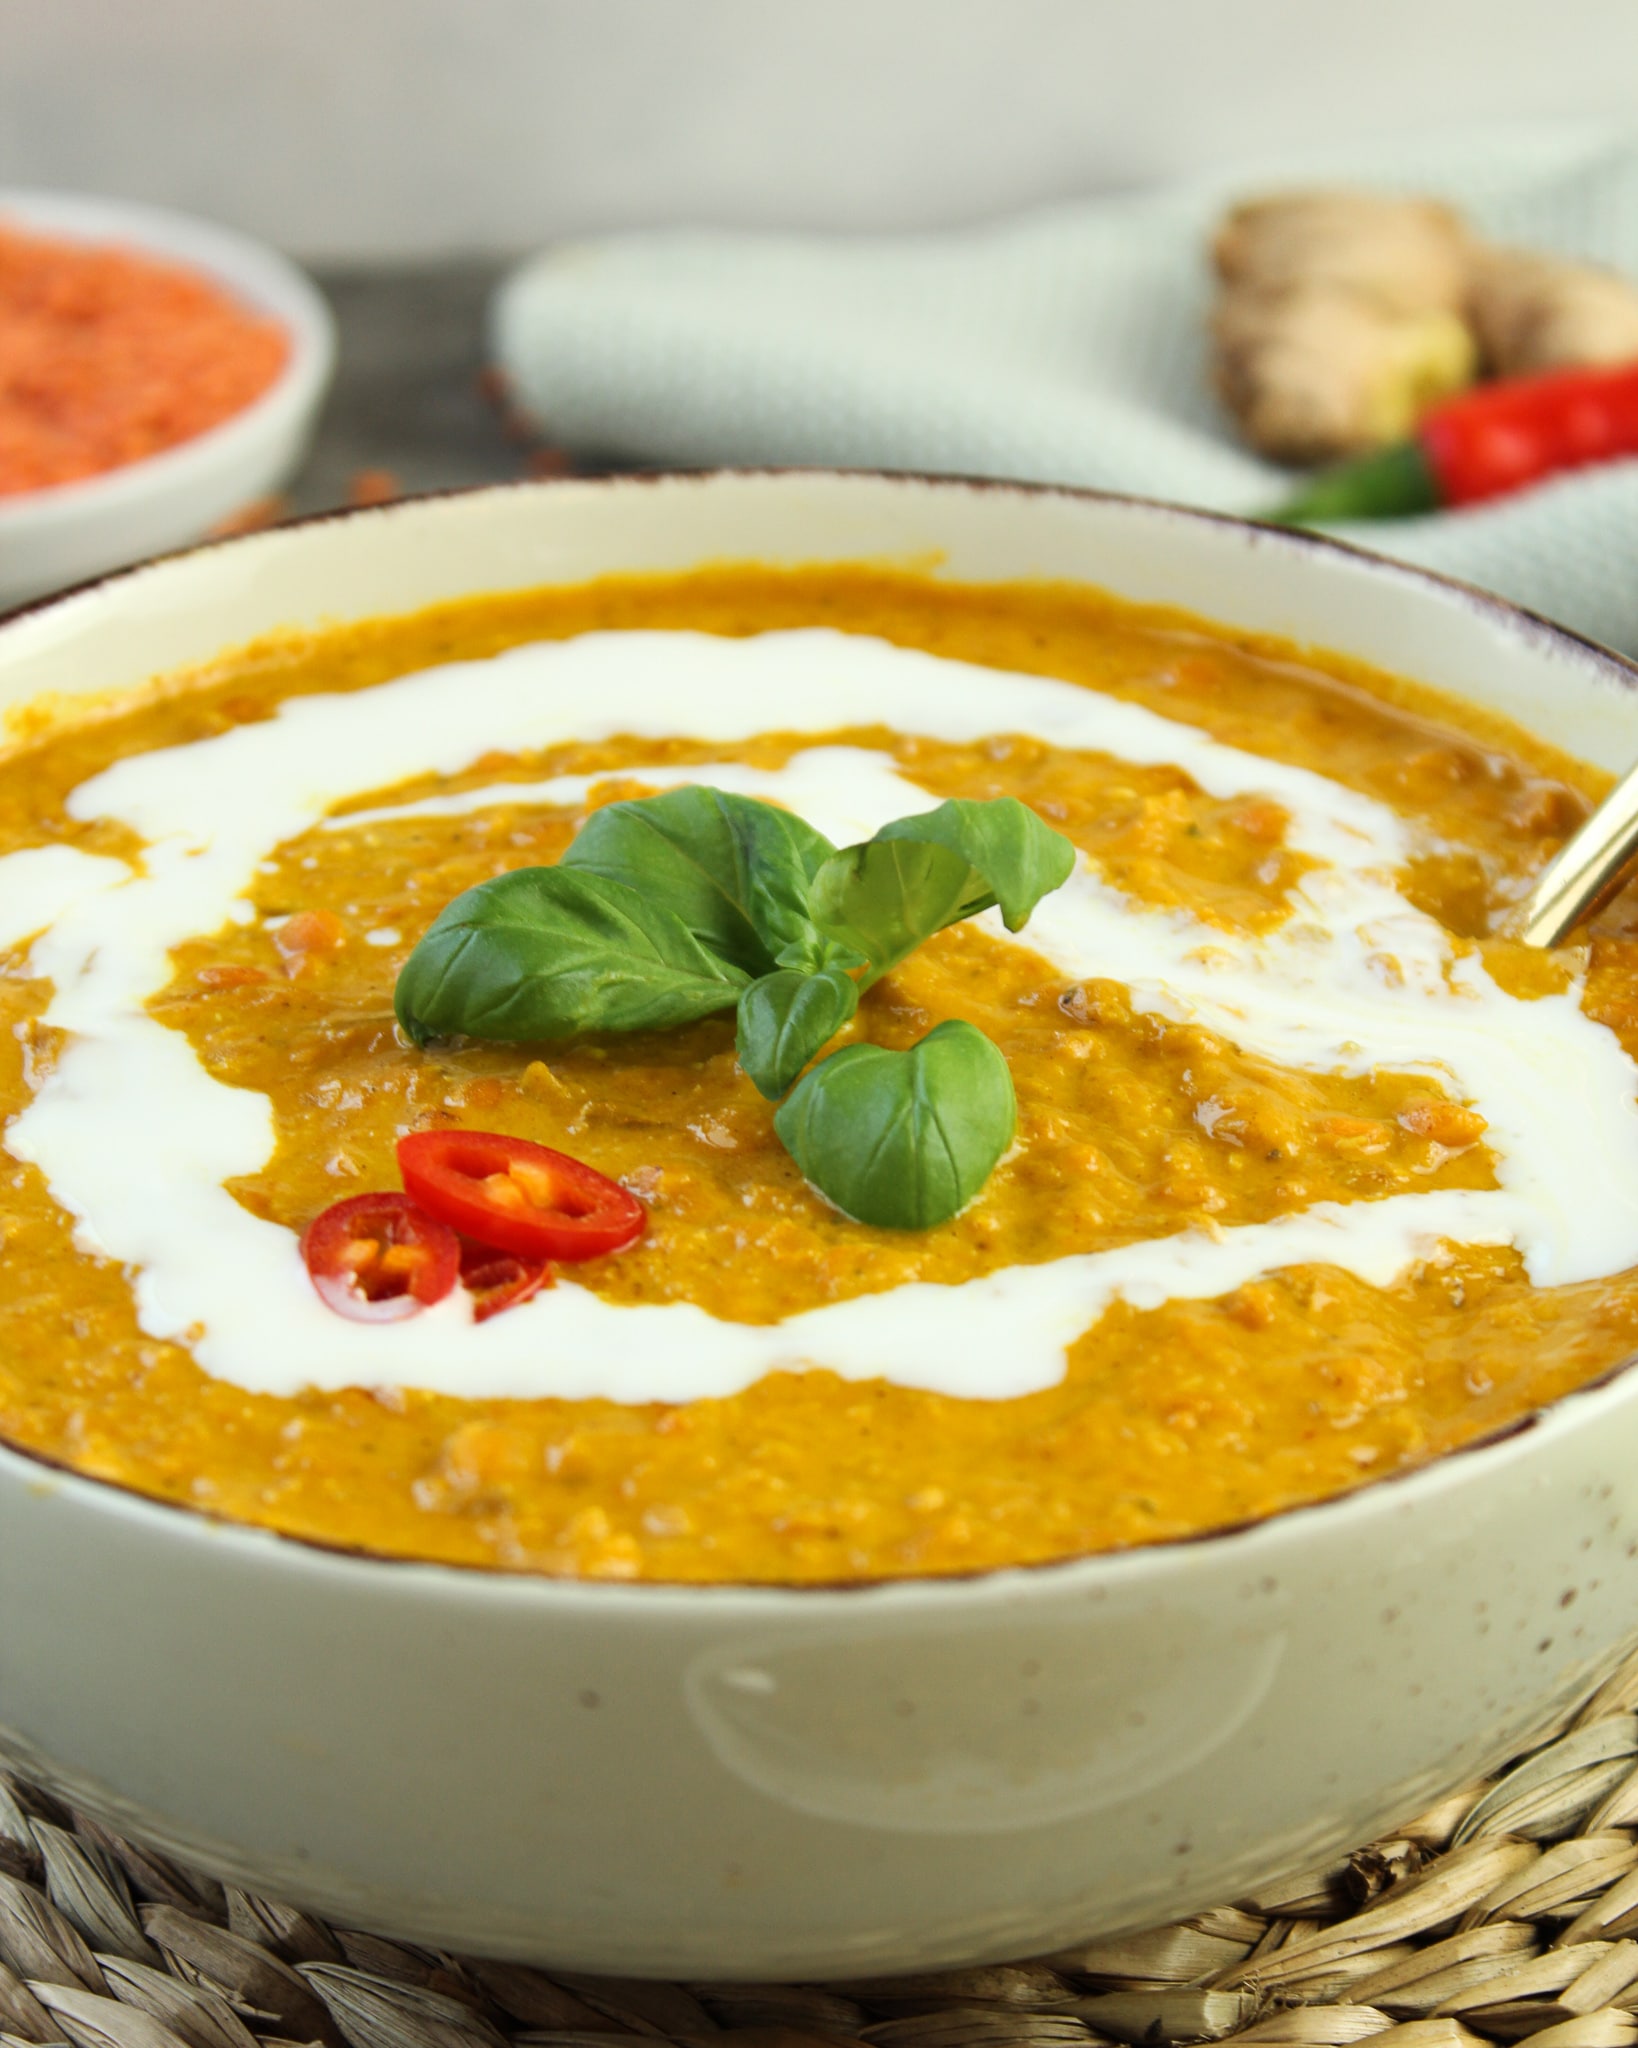 Einfaches Rote Linsen-Curry (schnell & vegan) - Kochkarussell